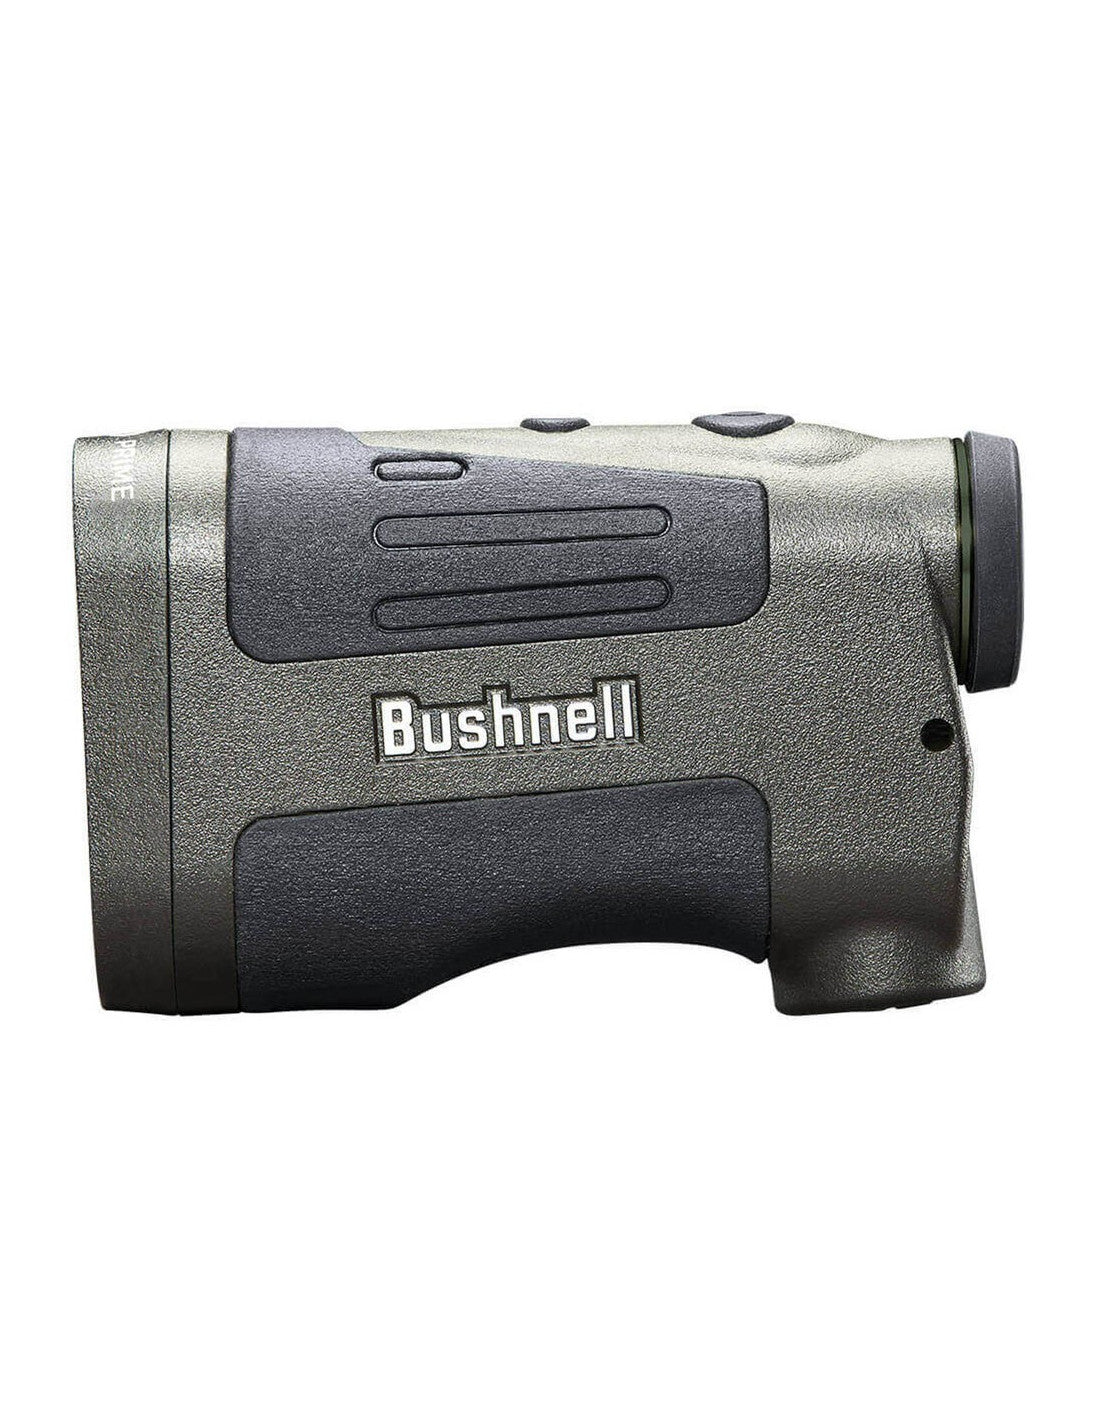 Telémetro Bushnell Tour V2 - Telémetros Bushnell